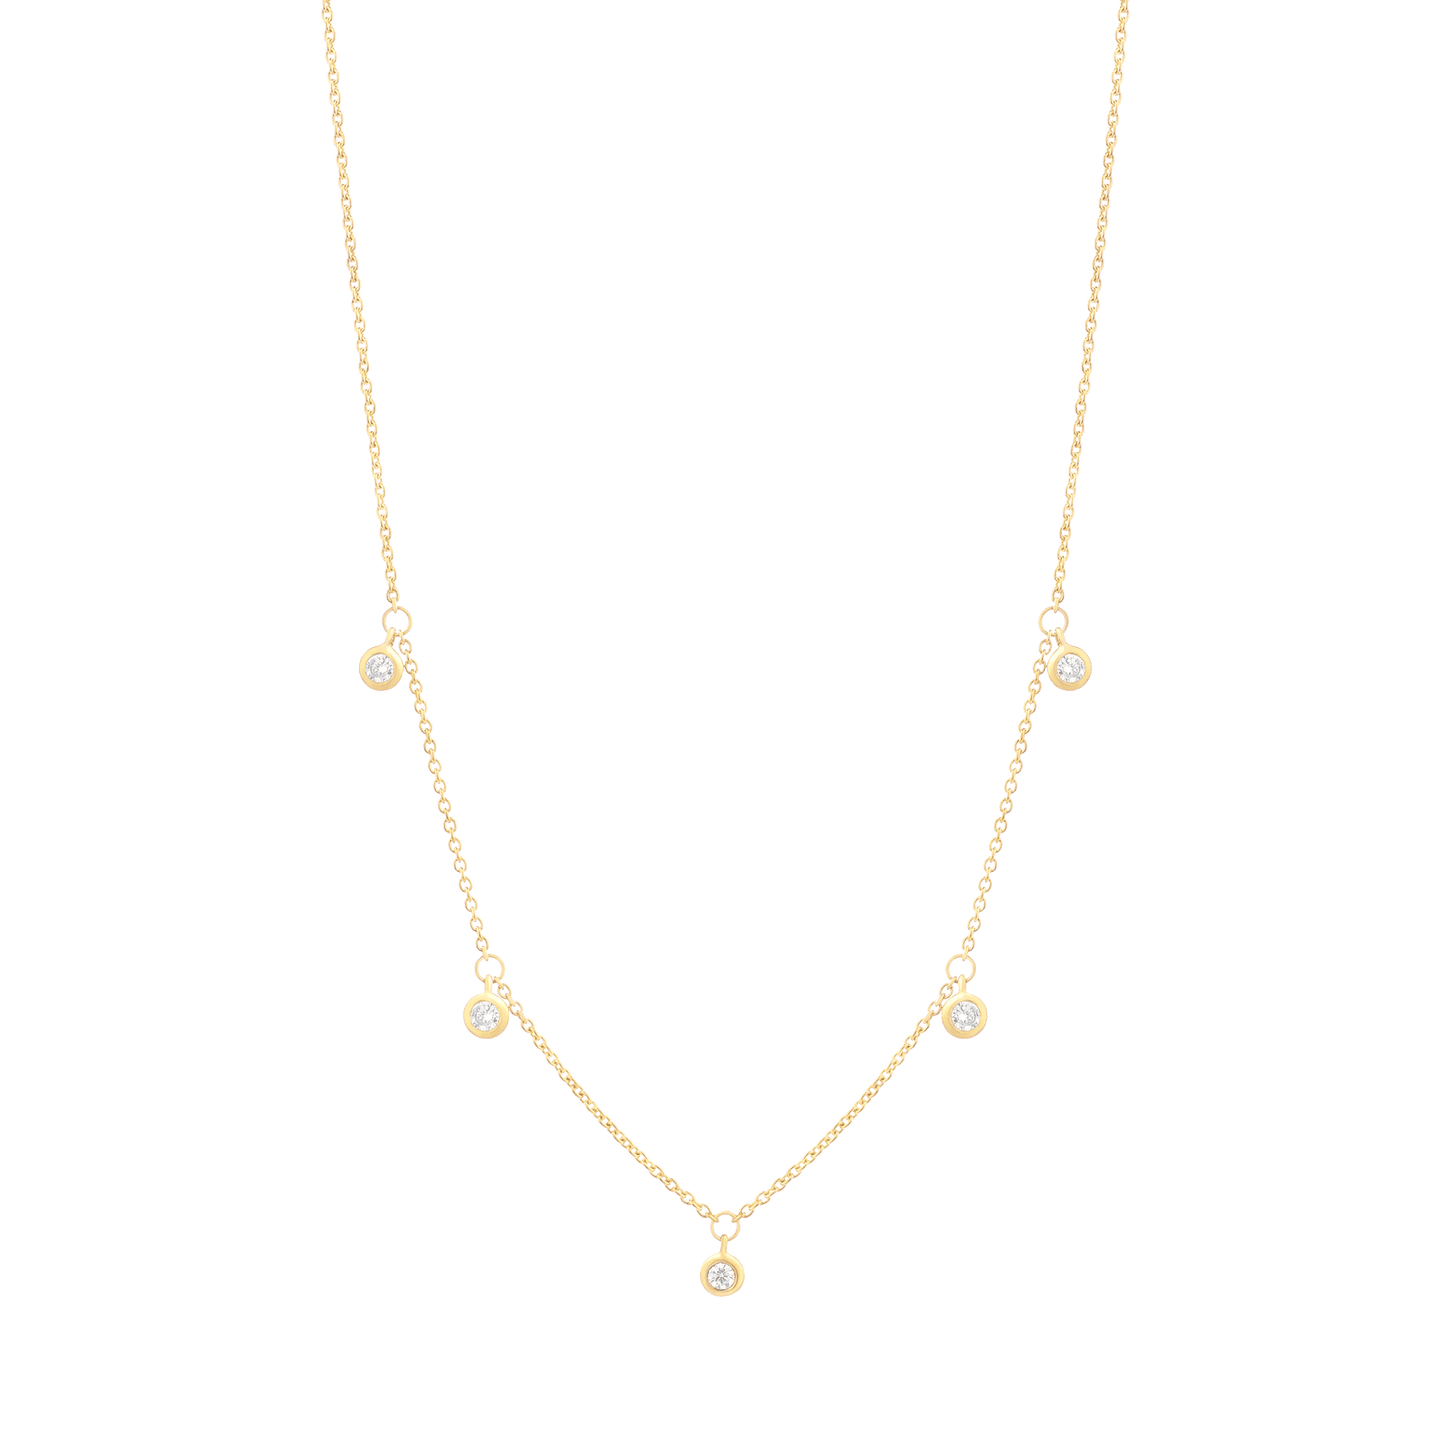 5 Diamonds Bezel Necklace - 18K Gold Vermeil Necklaces magal-dev 